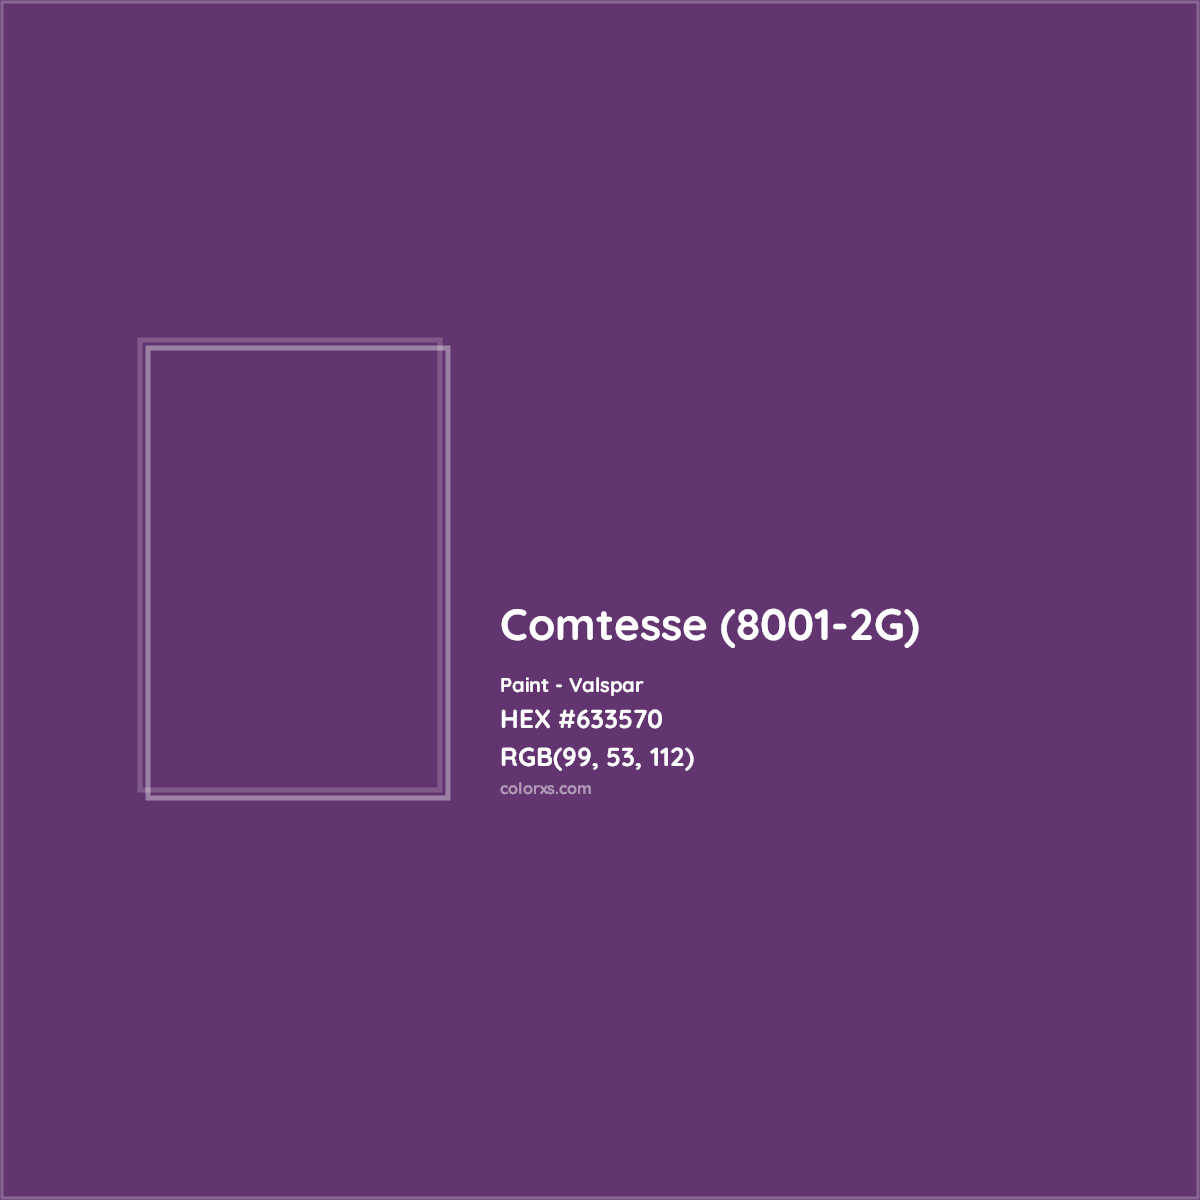 HEX #633570 Comtesse (8001-2G) Paint Valspar - Color Code